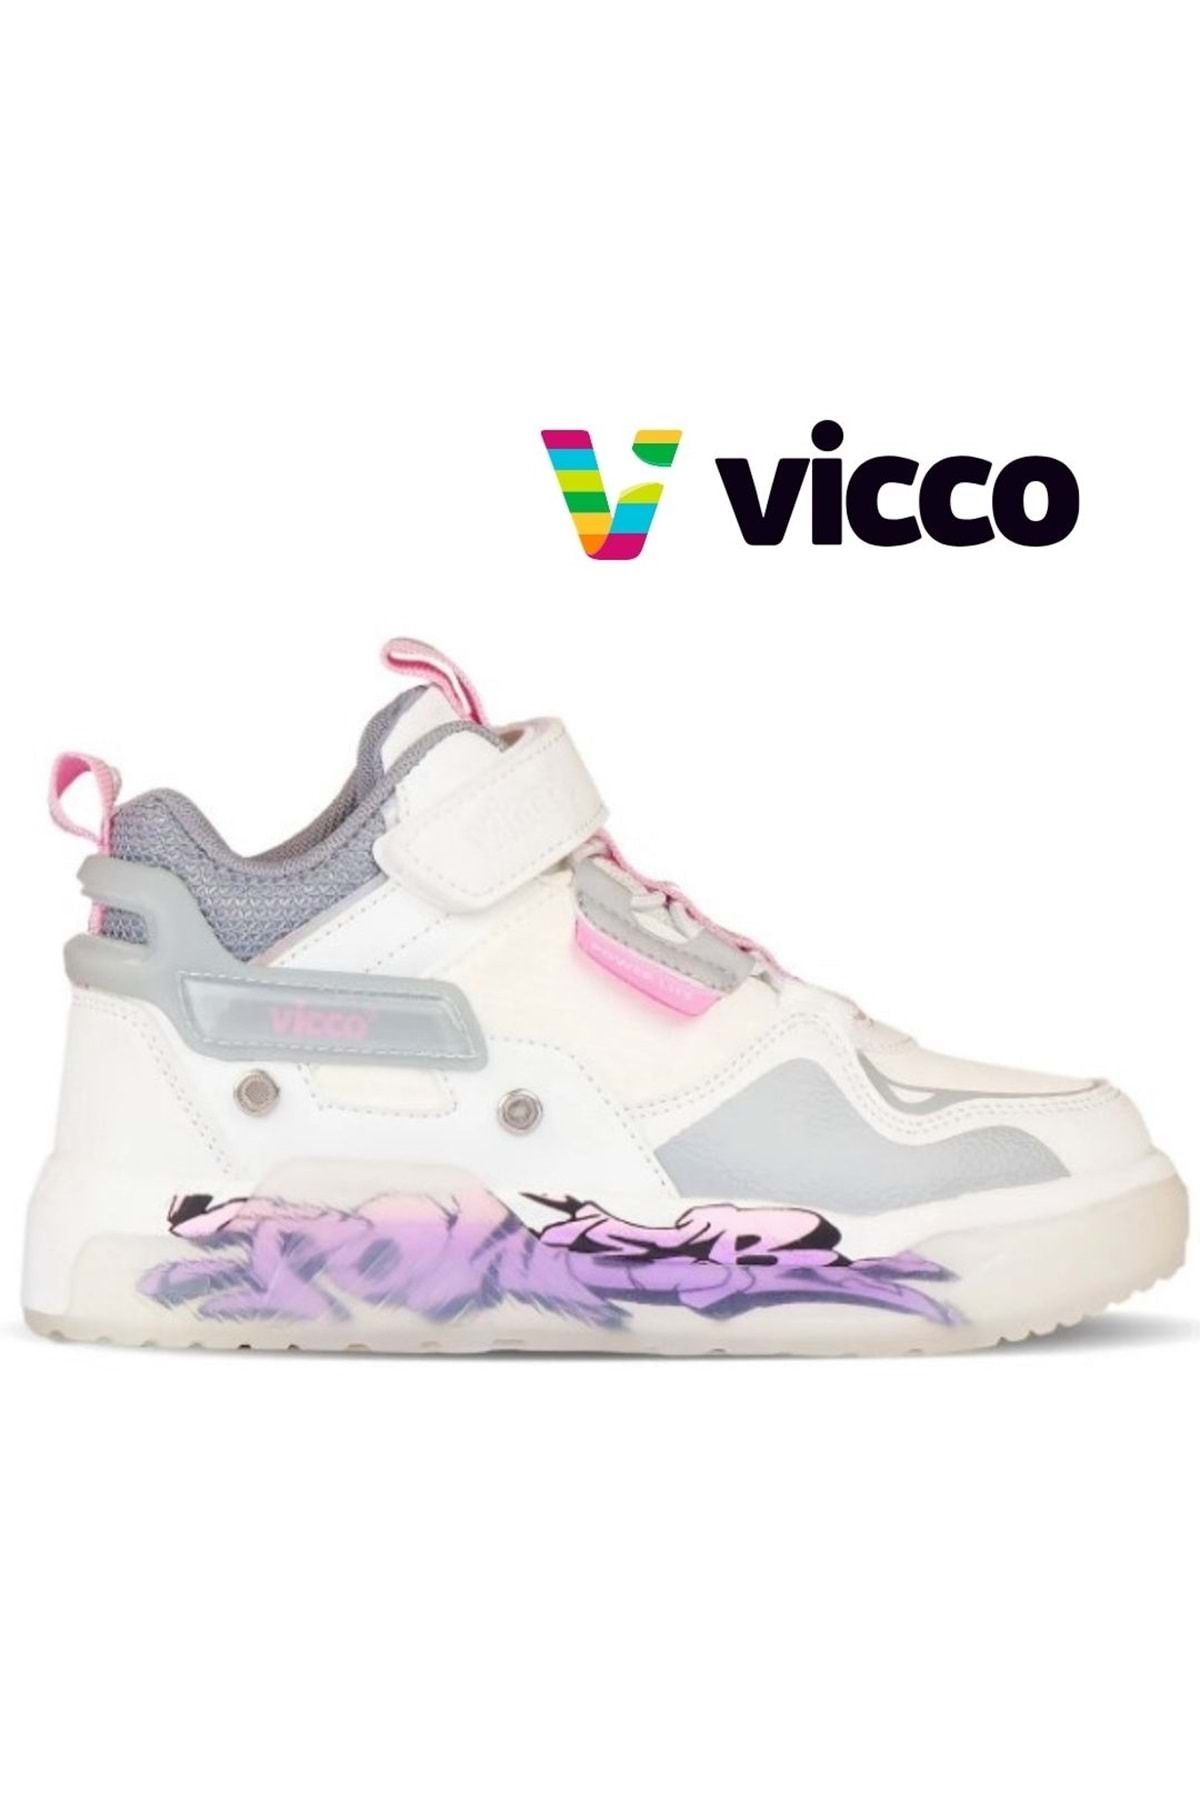 Vicco Martis Jordan Sneaker Force Ortopedik Çocuk Spor Ayakkabı Beyaz